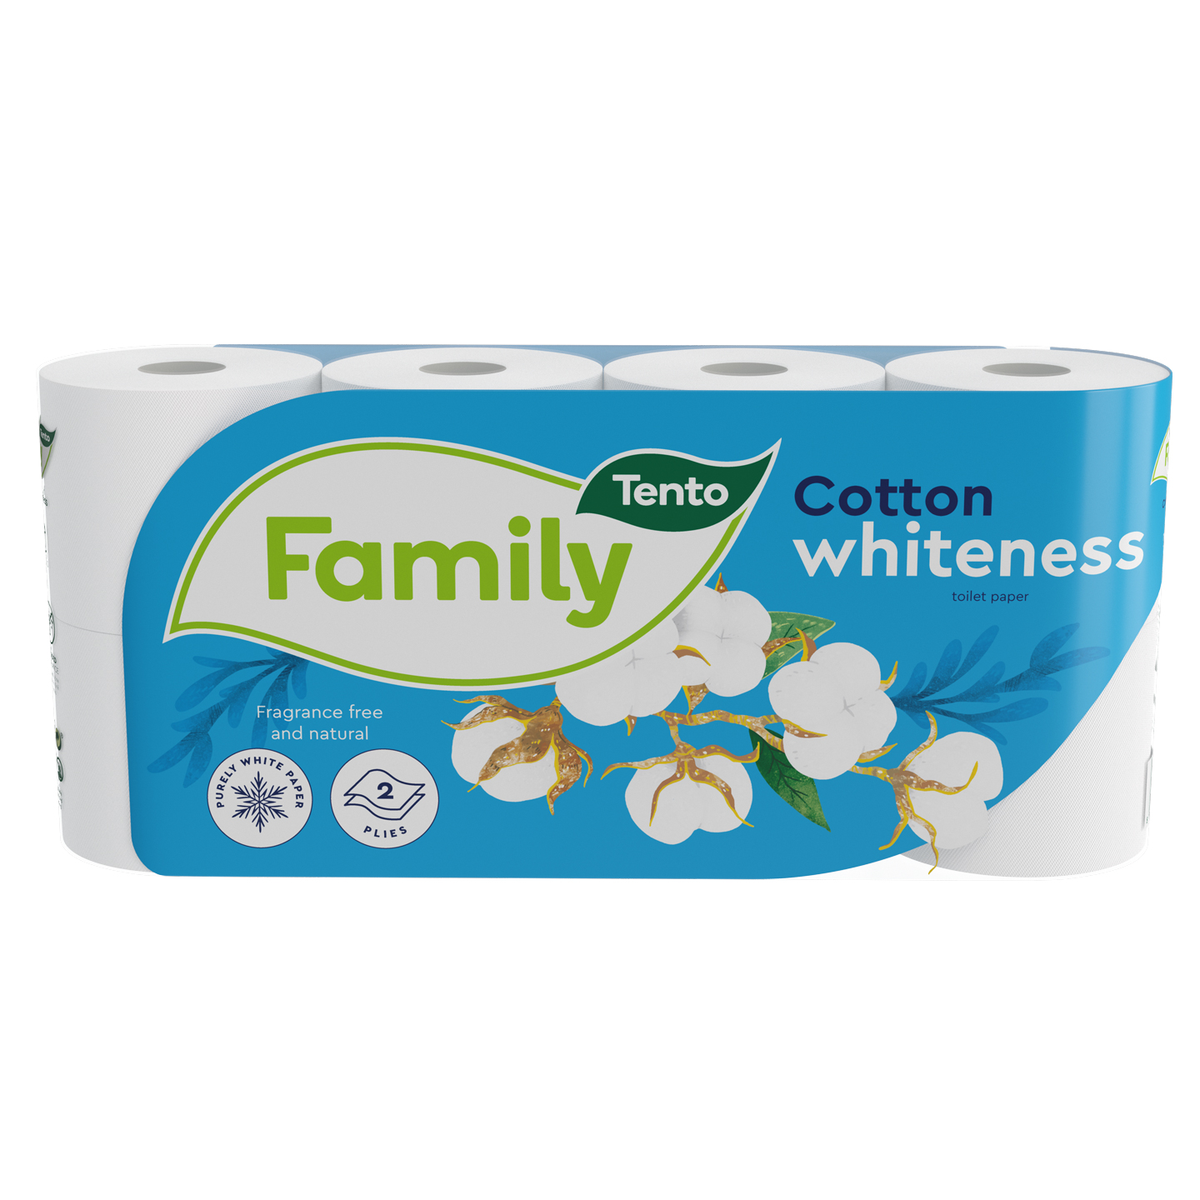 Tento Family Cotton Whiteness